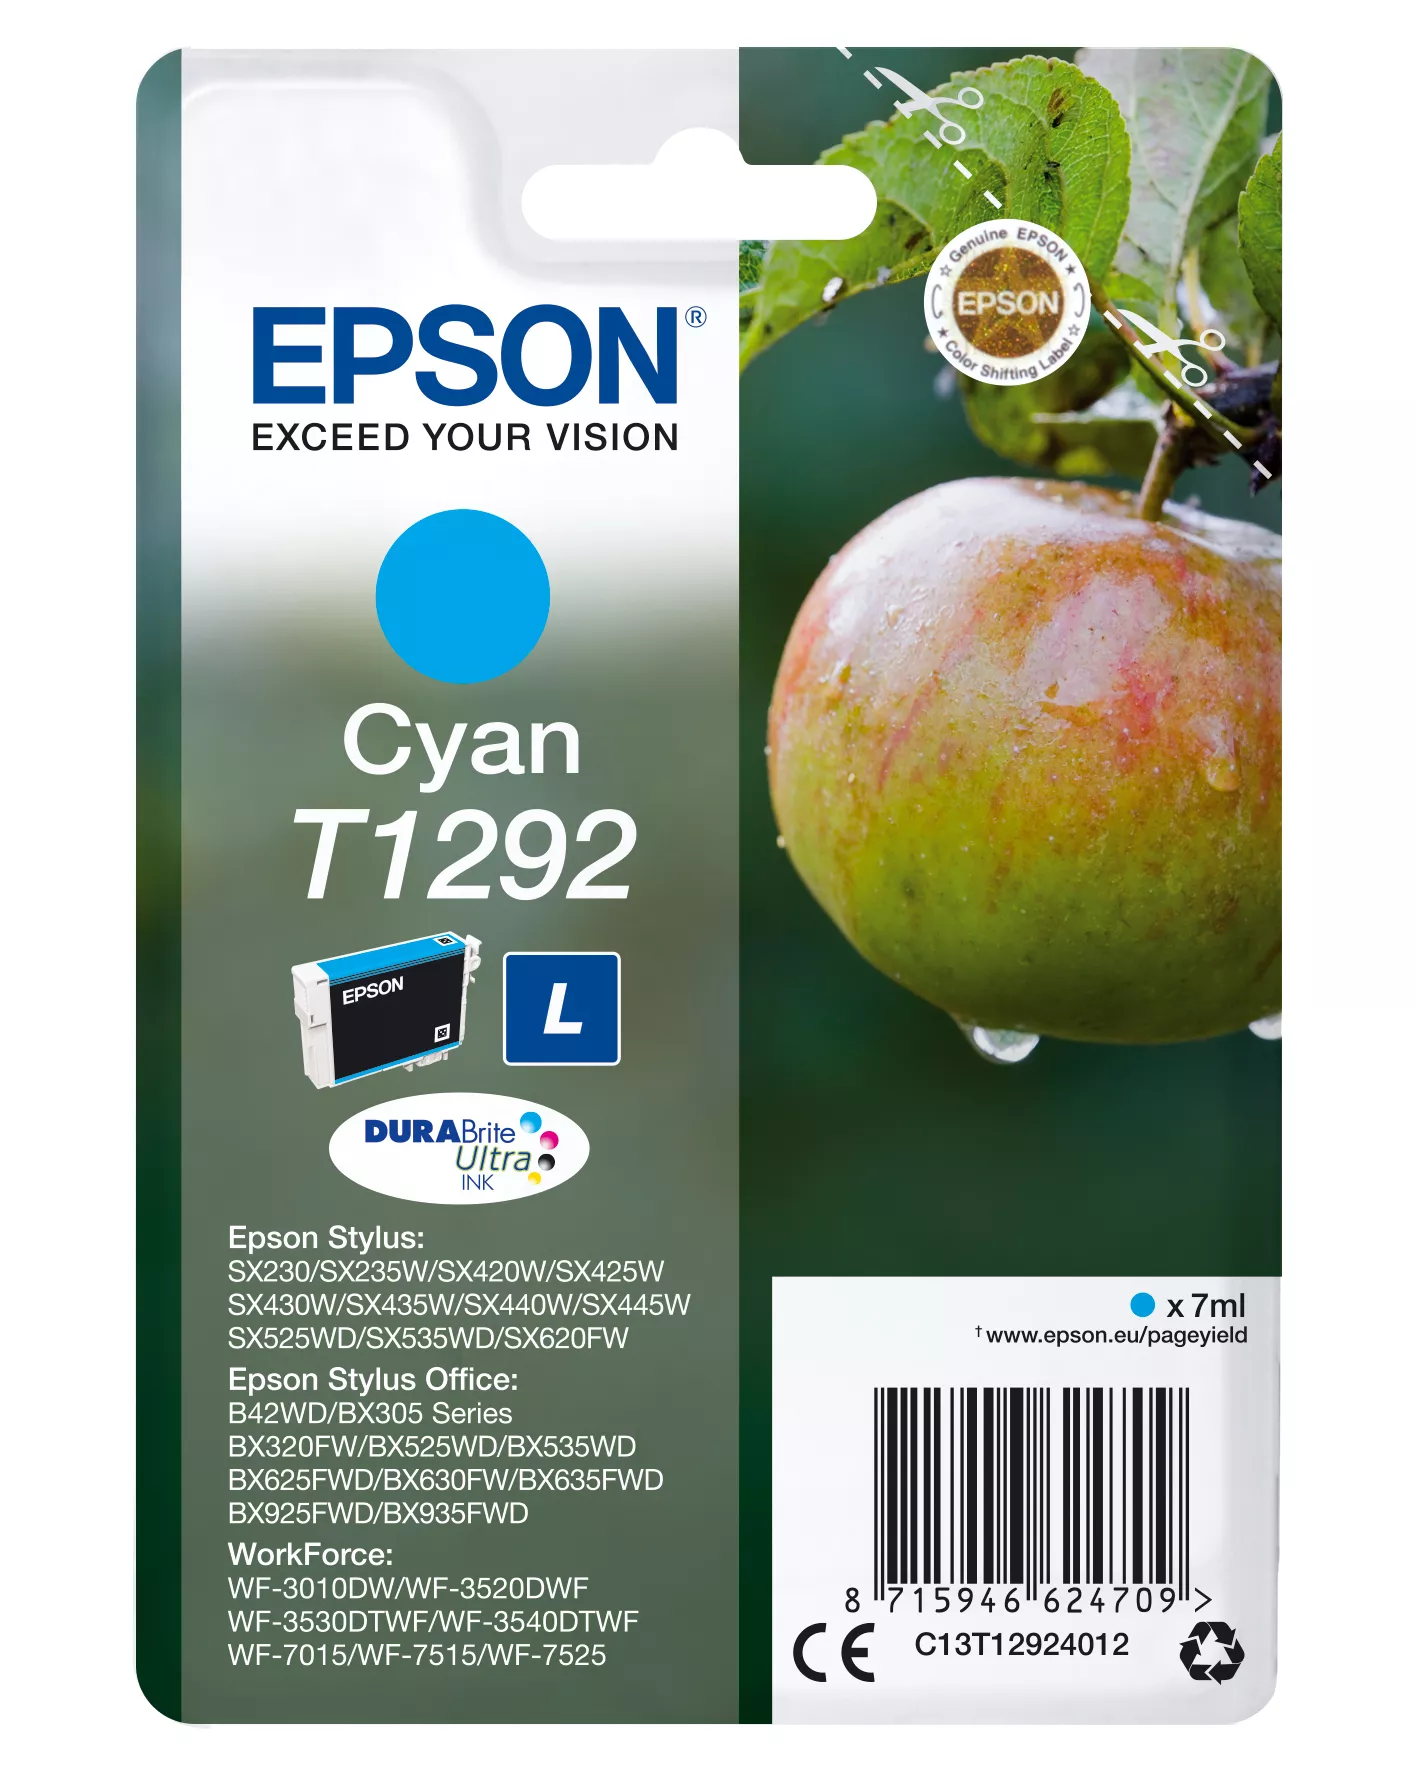 Achat EPSON T1292 cartouche d encre cyan haute capacité 7ml 1 et autres produits de la marque Epson